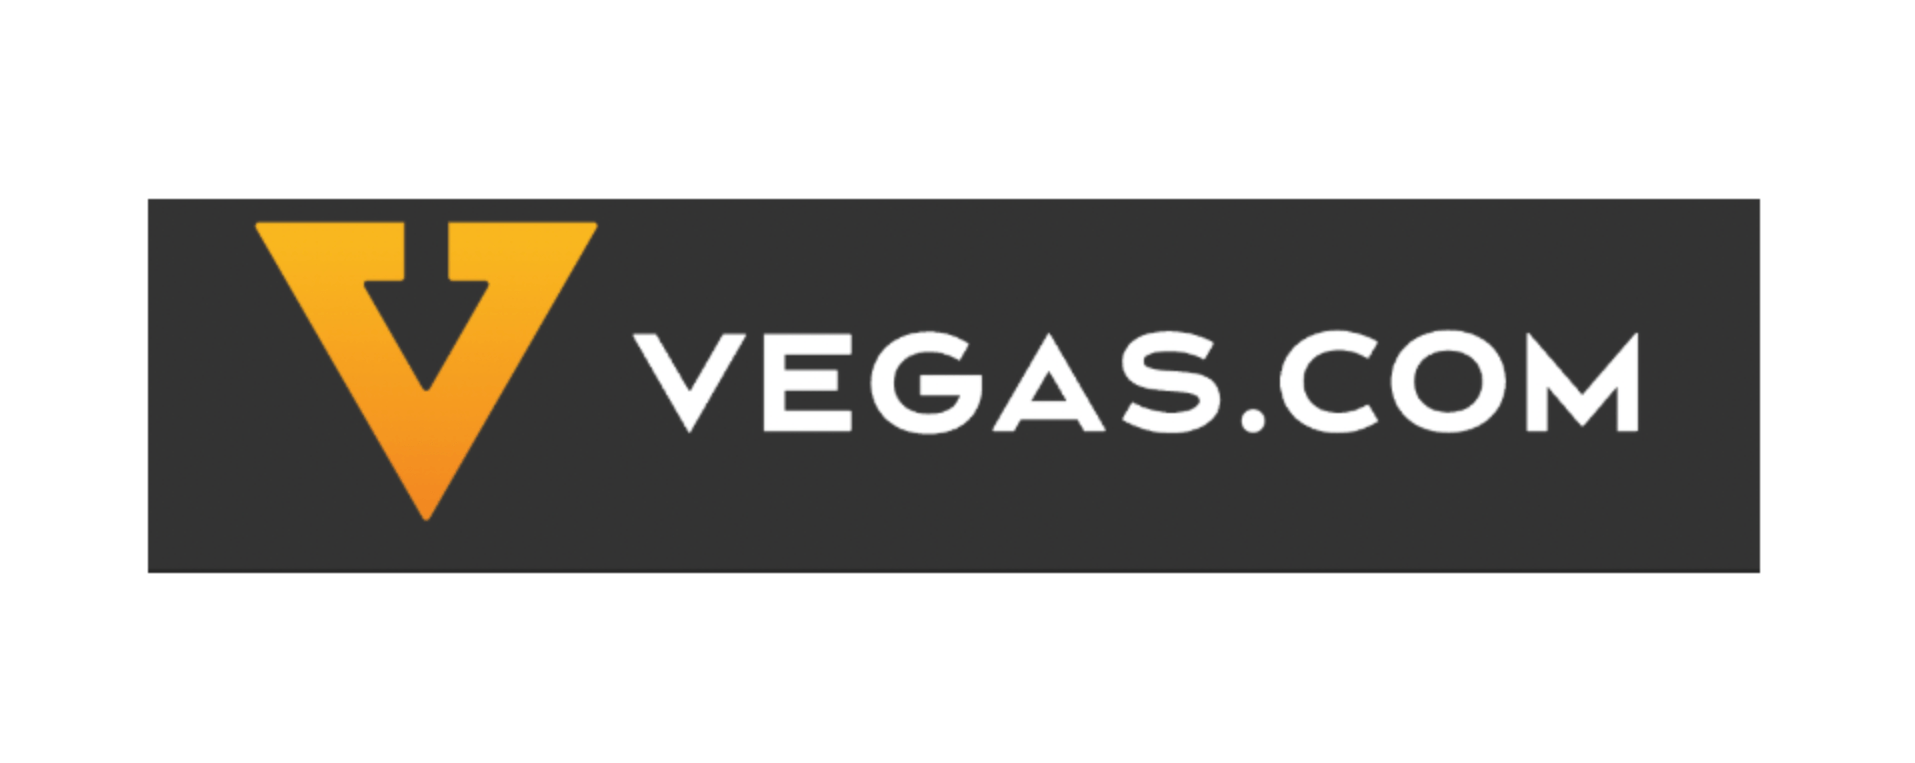 Vegas.com Store